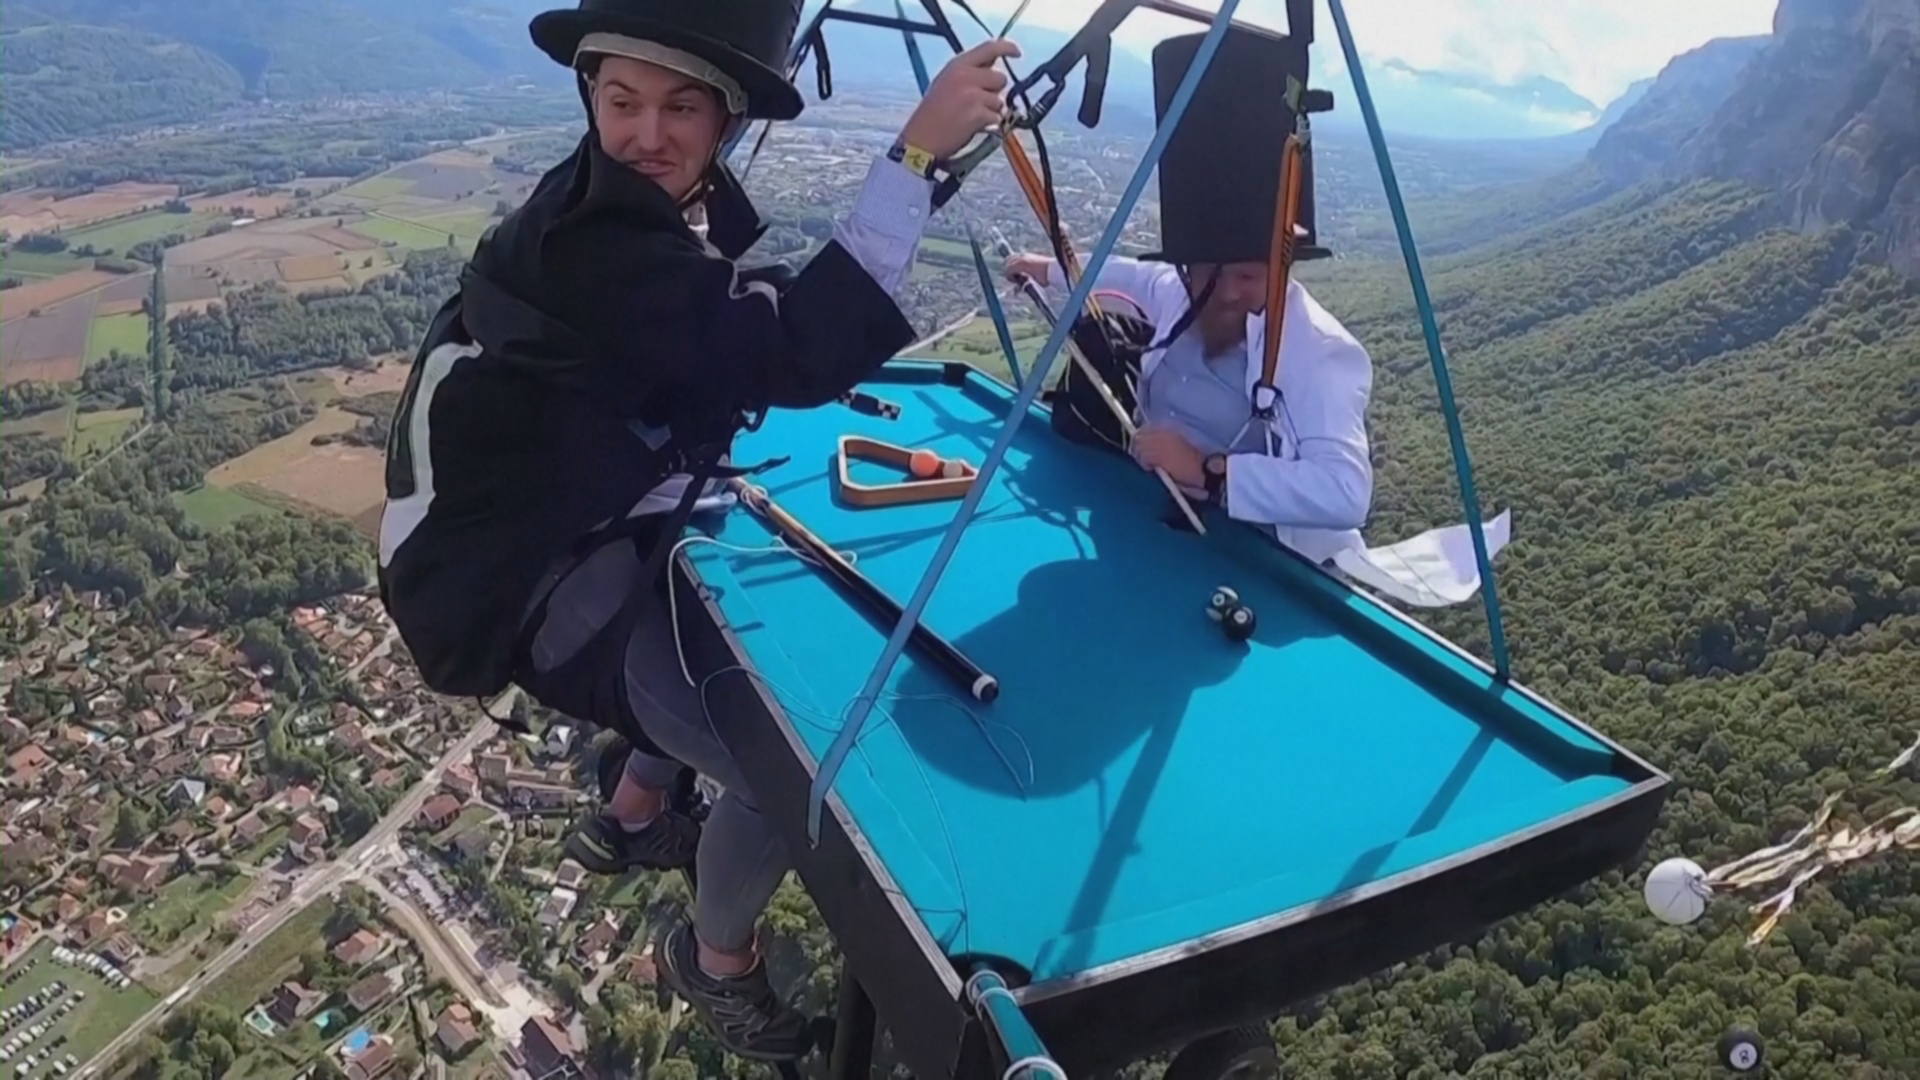 Кубок Икара: полёт над Альпами на параплане